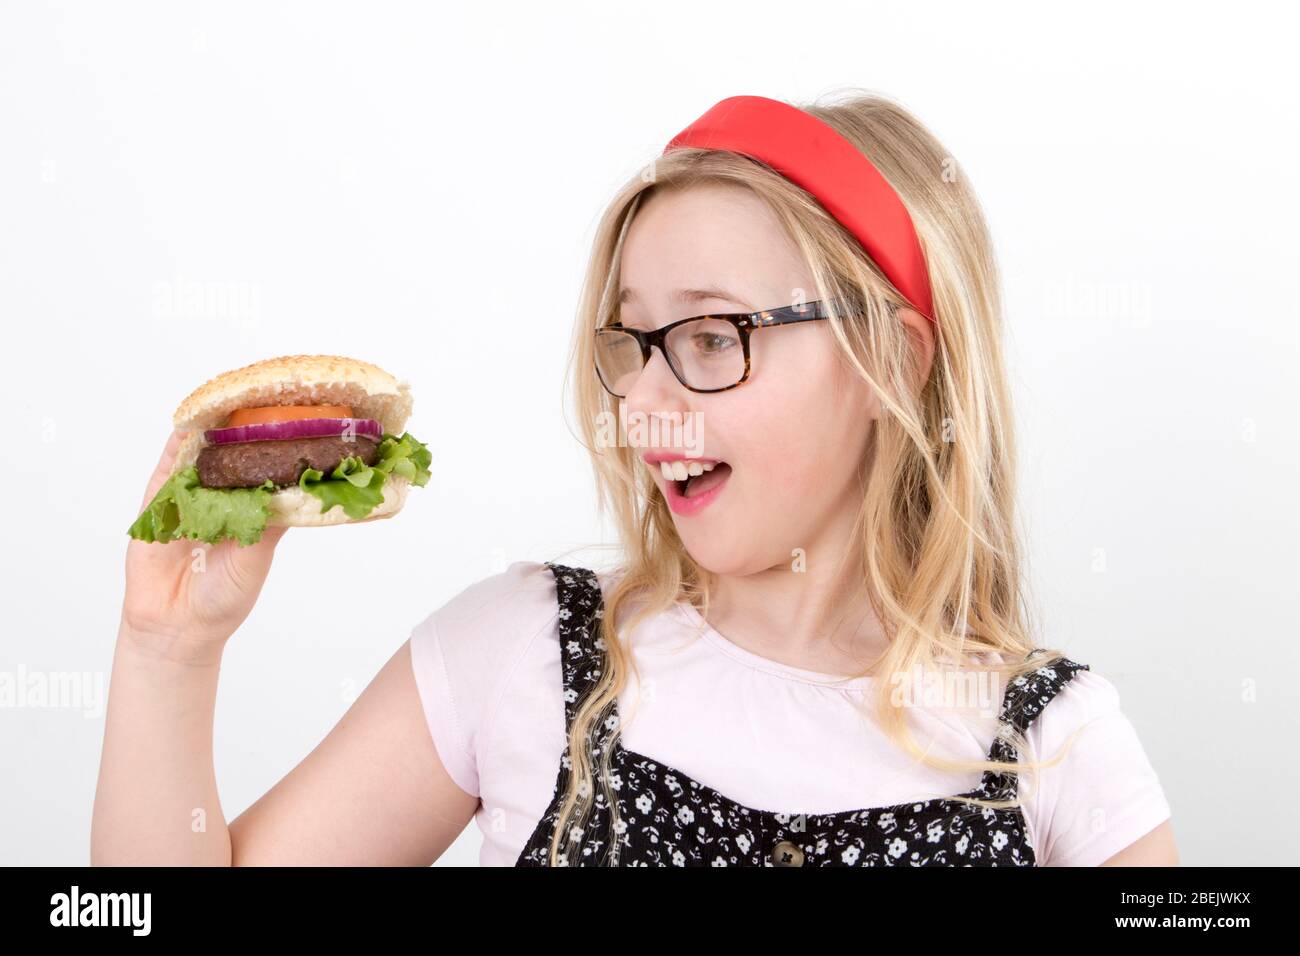 Junge blonde Mädchen trägt eine Brille in einer roten Alice Band hält einen hausgemachten Burger Stockfoto